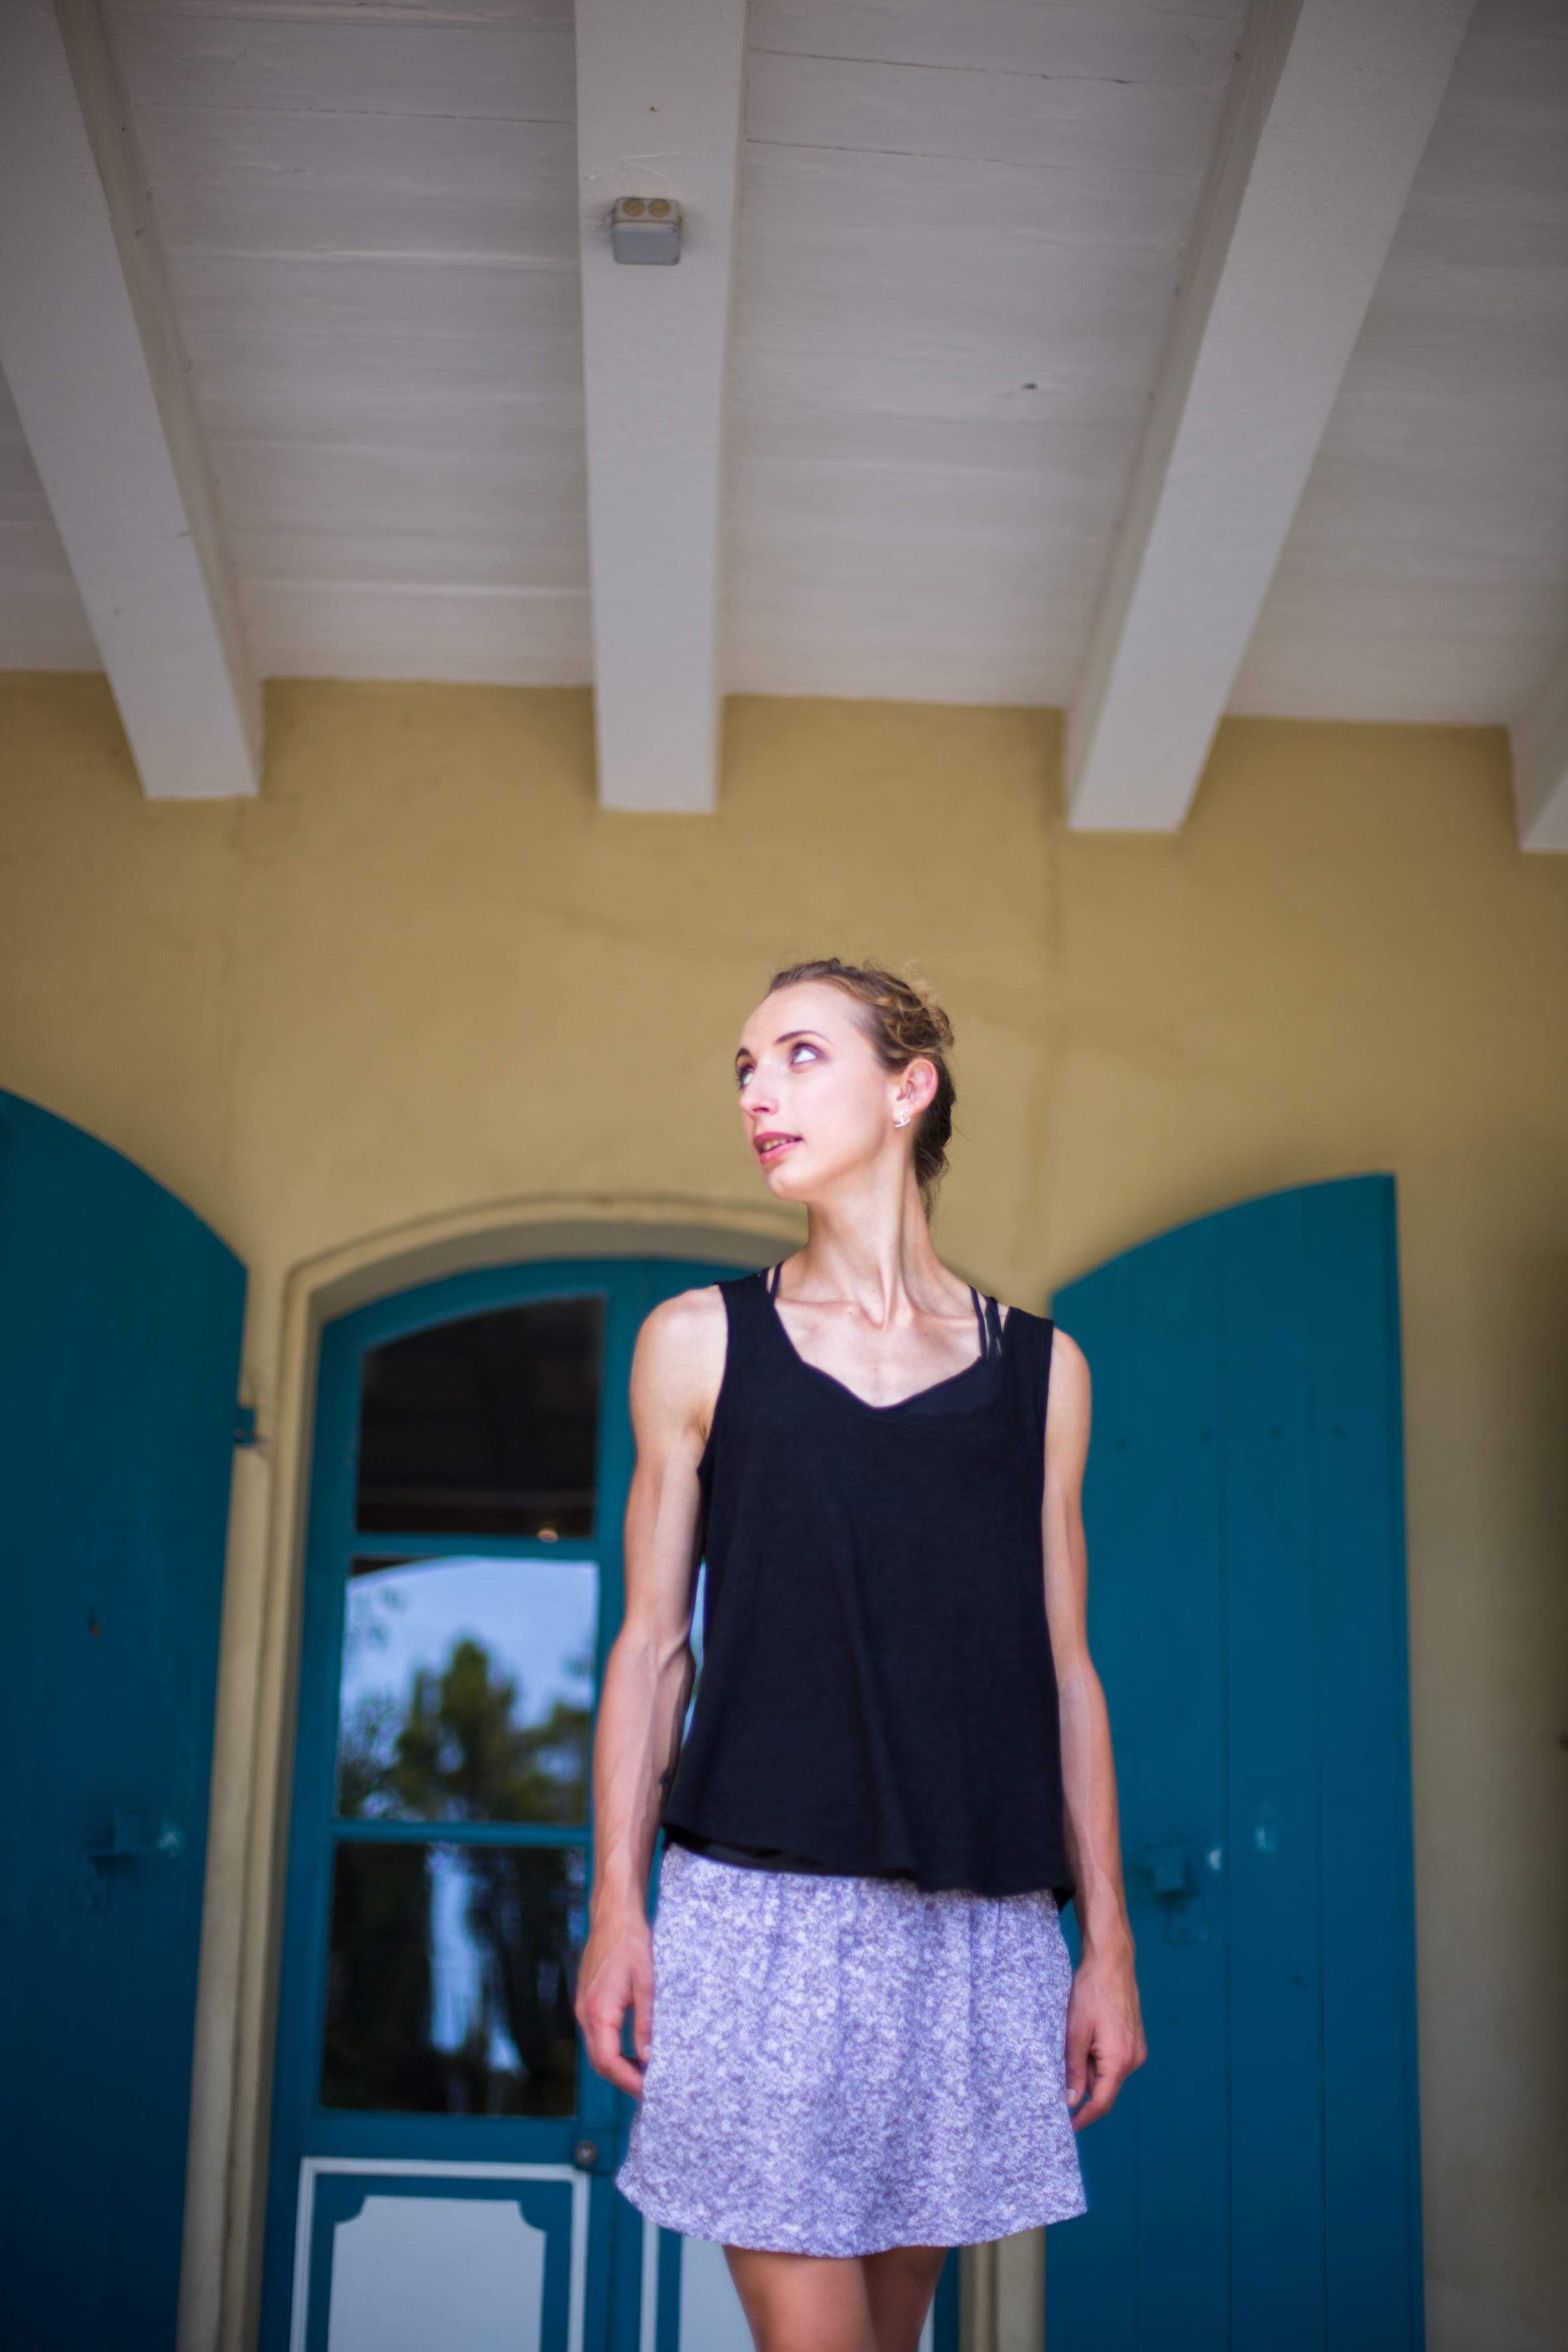 Lisa Argelliès, son terrible combat face à l’anorexie, « le suicide lent ».